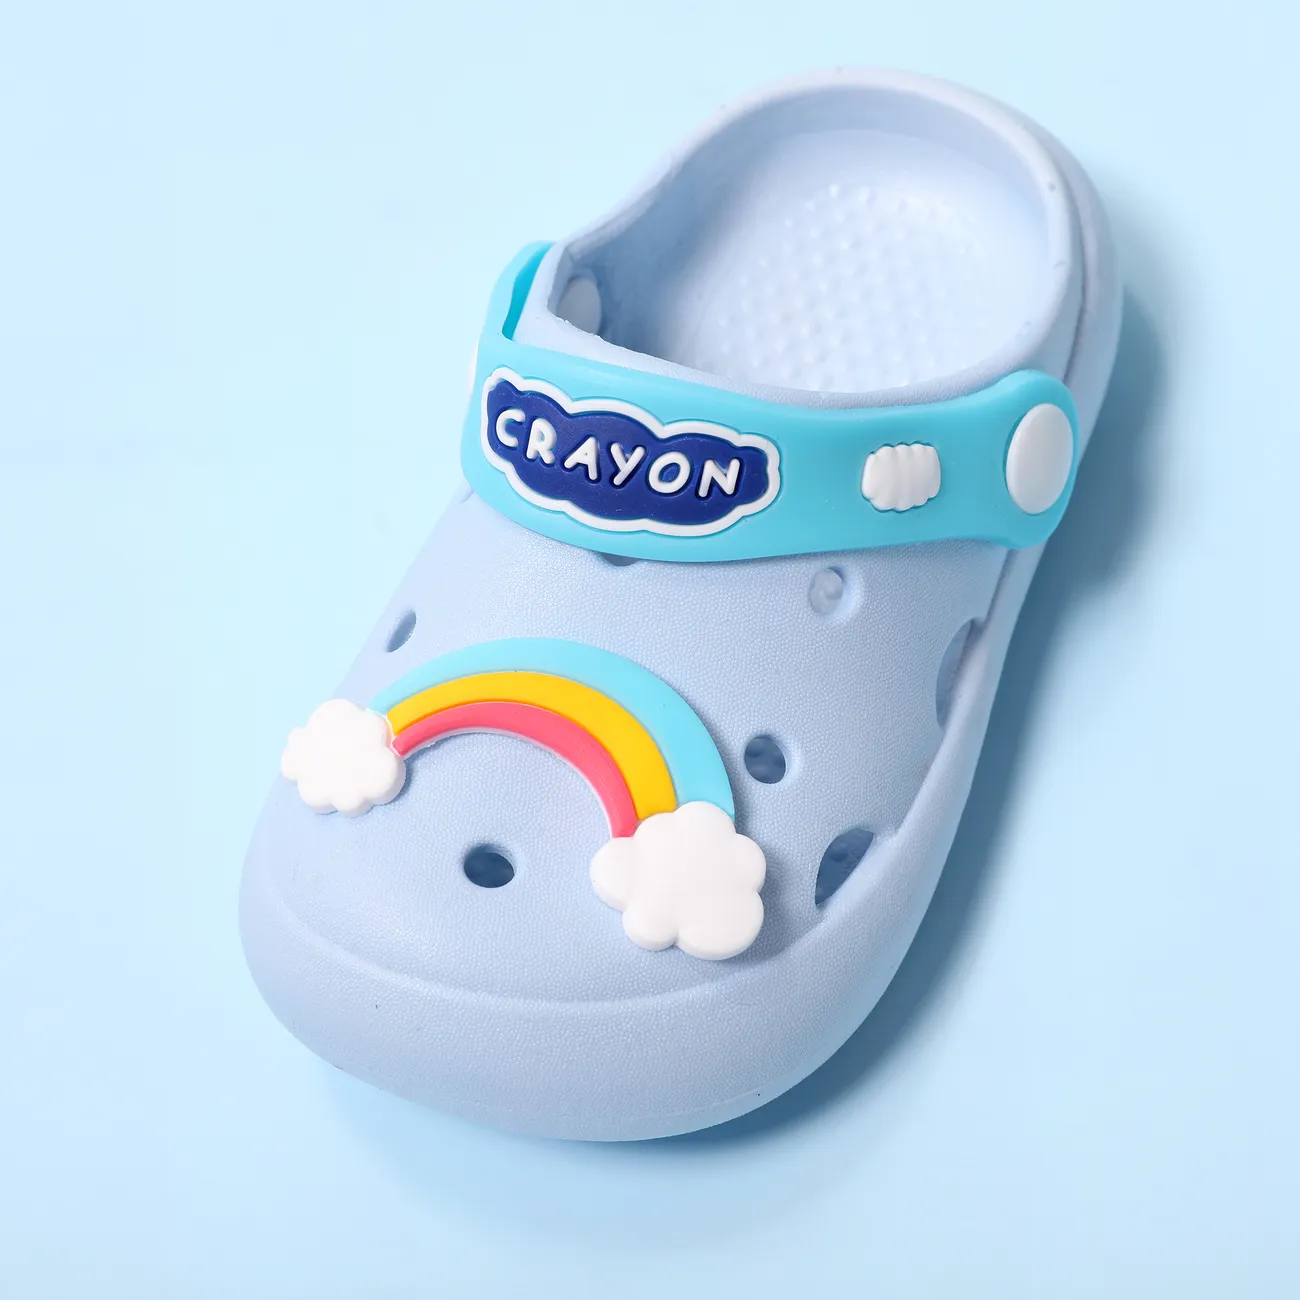 Enfant en bas âge/enfants fille/garçon coloré arc-en-ciel et licorne design plage trou chaussures Bleu big image 1